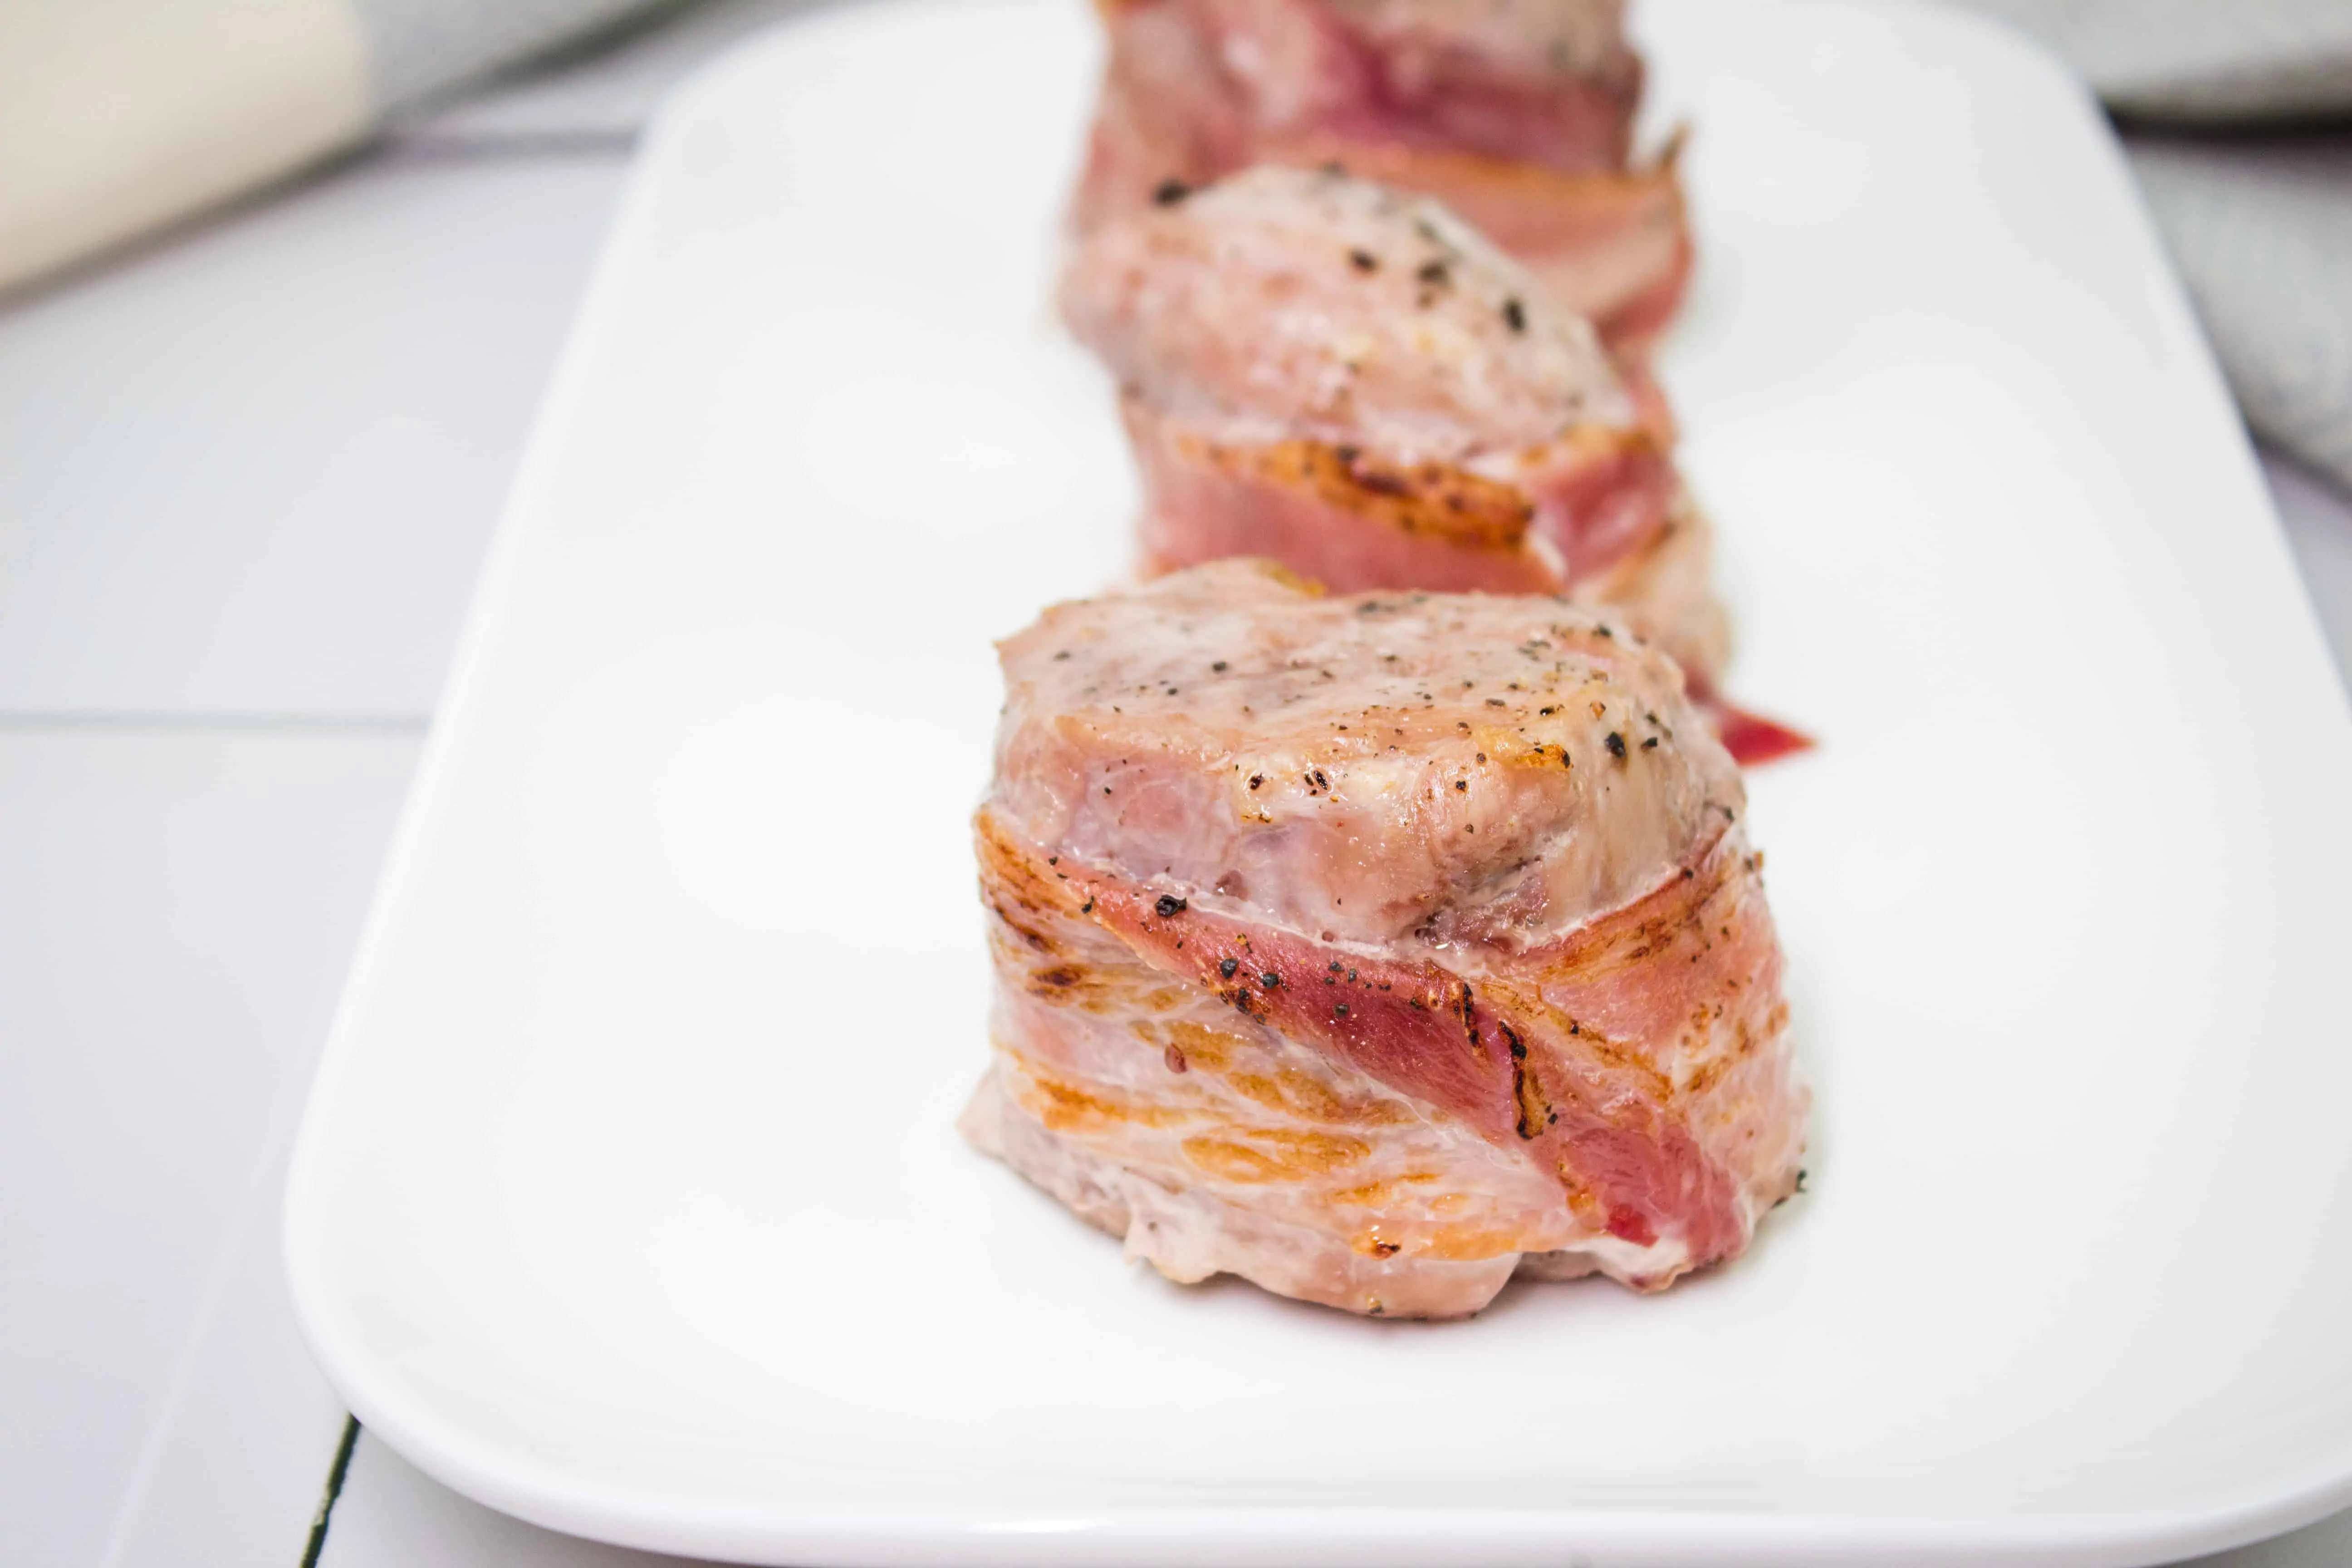 bacon wrapped pork tenderloin on a plate